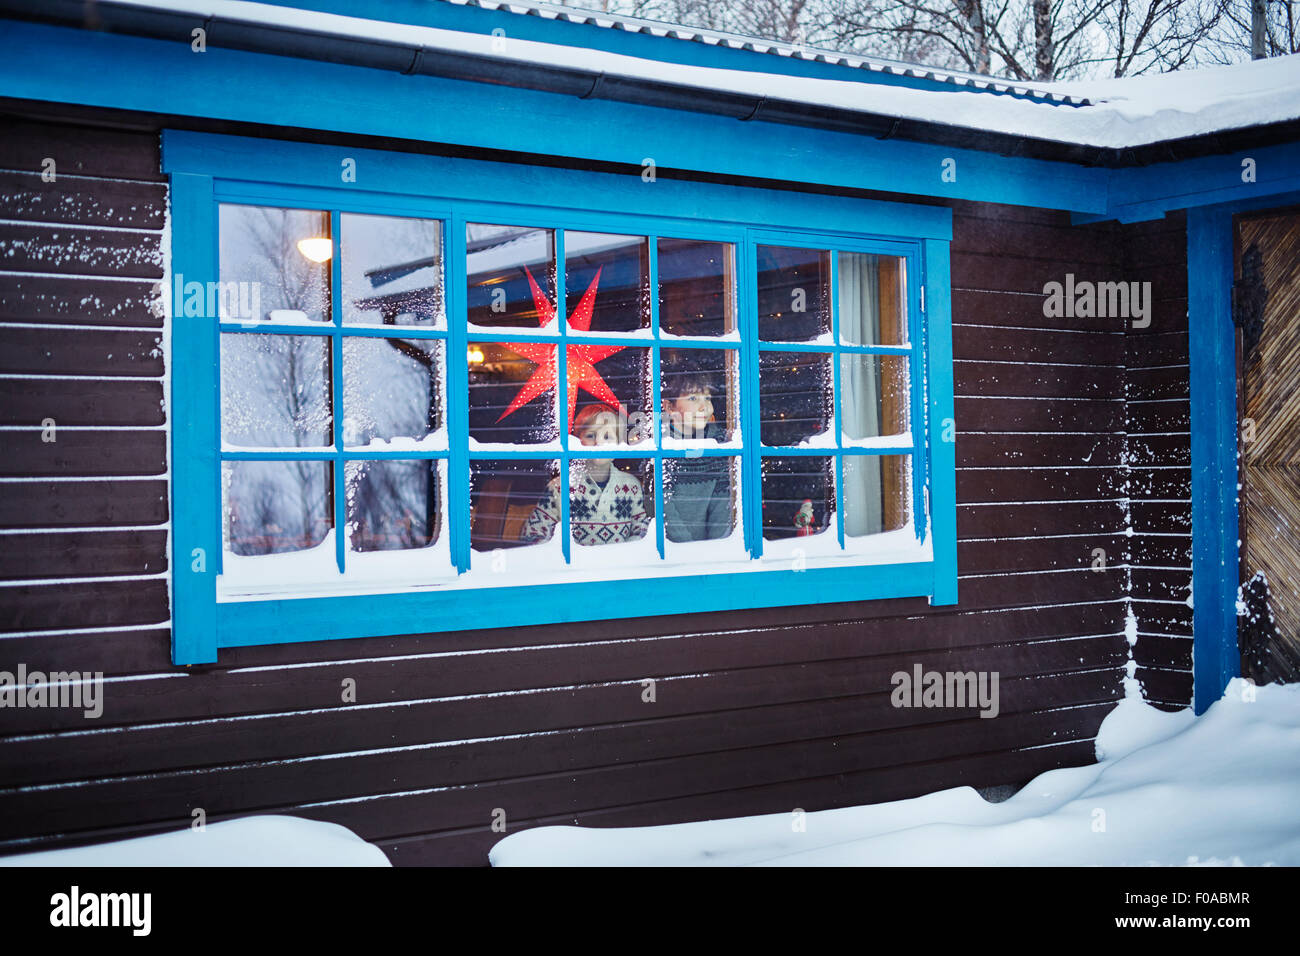 Deux frères à la recherche hors de la fenêtre de cabine couverte de neige à Noël Banque D'Images